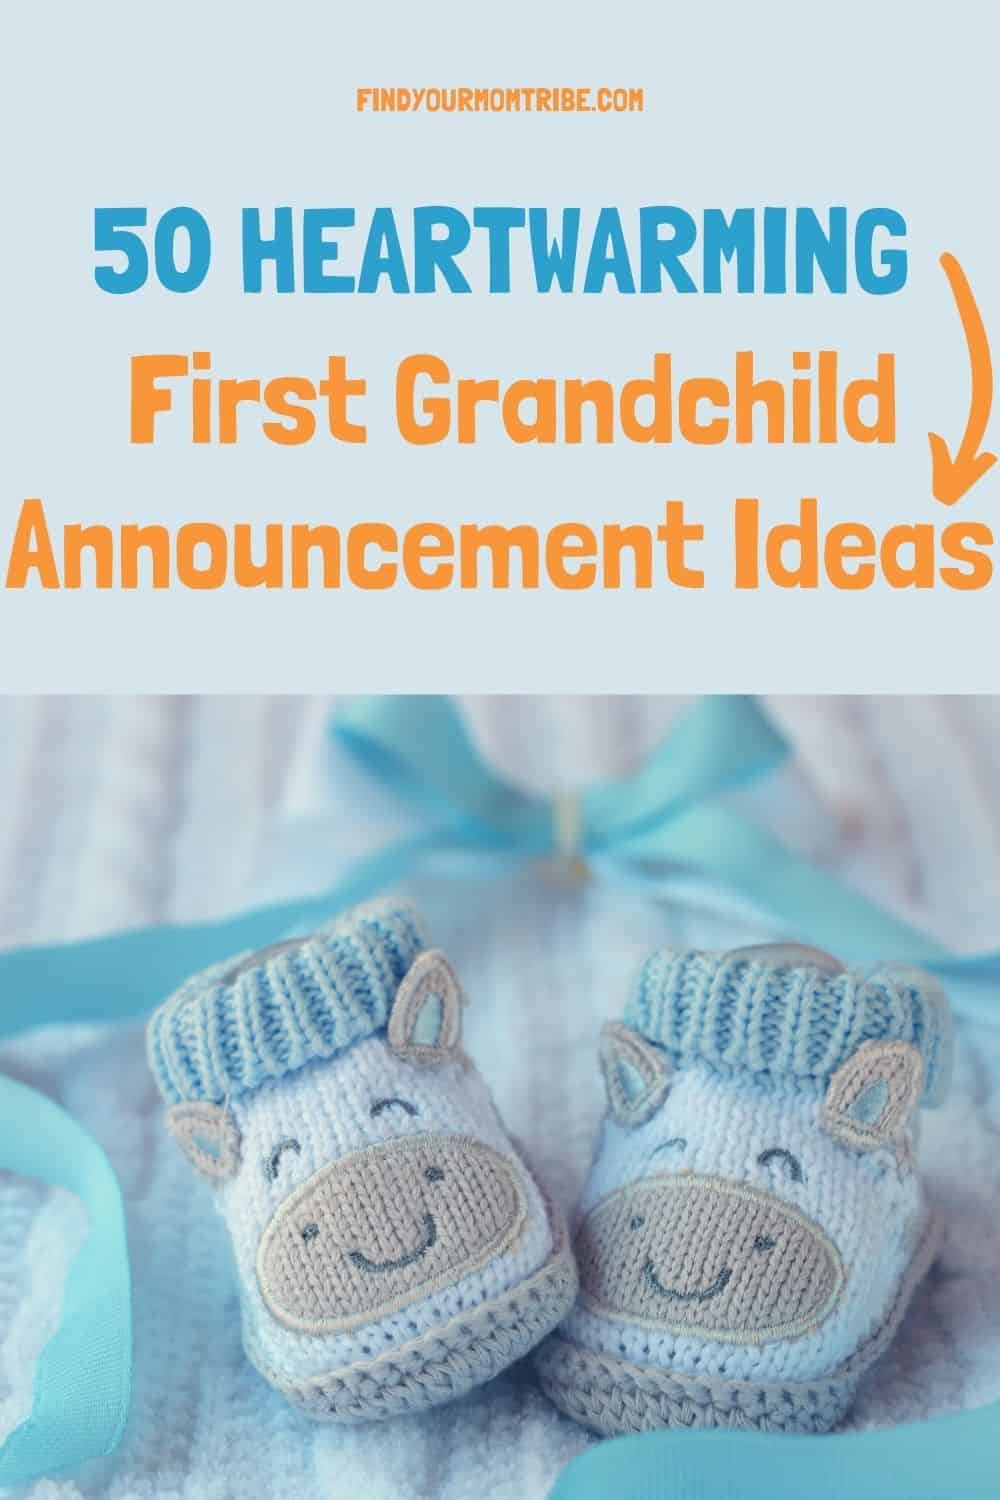 Pinterest first grandchild announcement ideas 